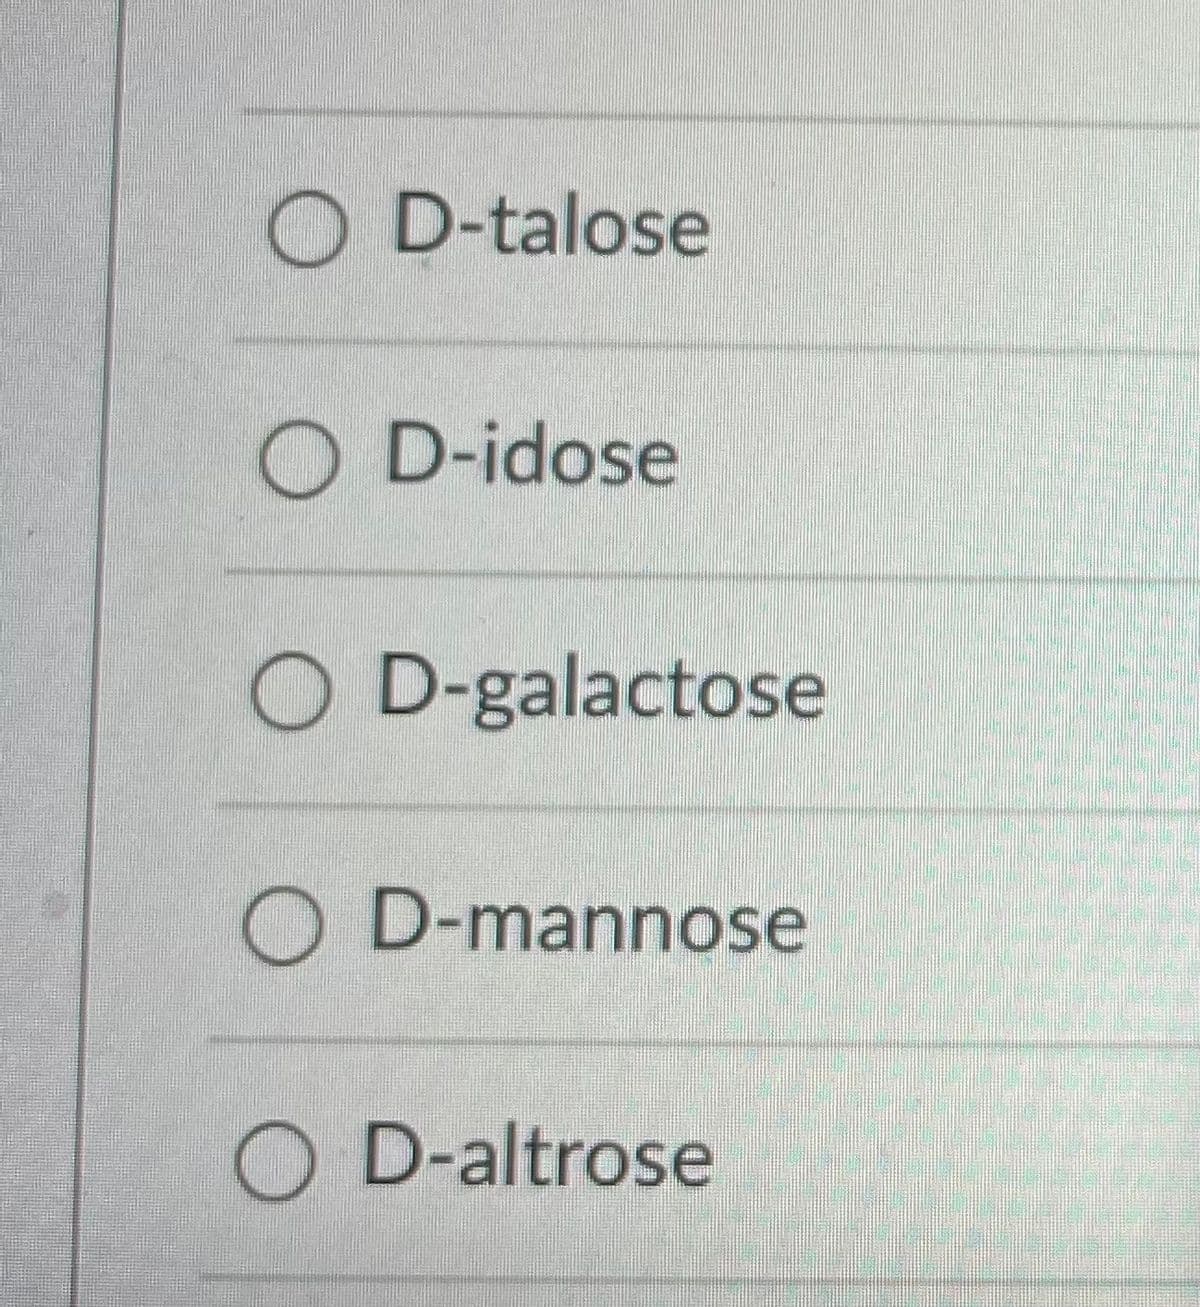 O D-talose
O D-idose
O D-galactose
O D-mannose
O D-altrose
